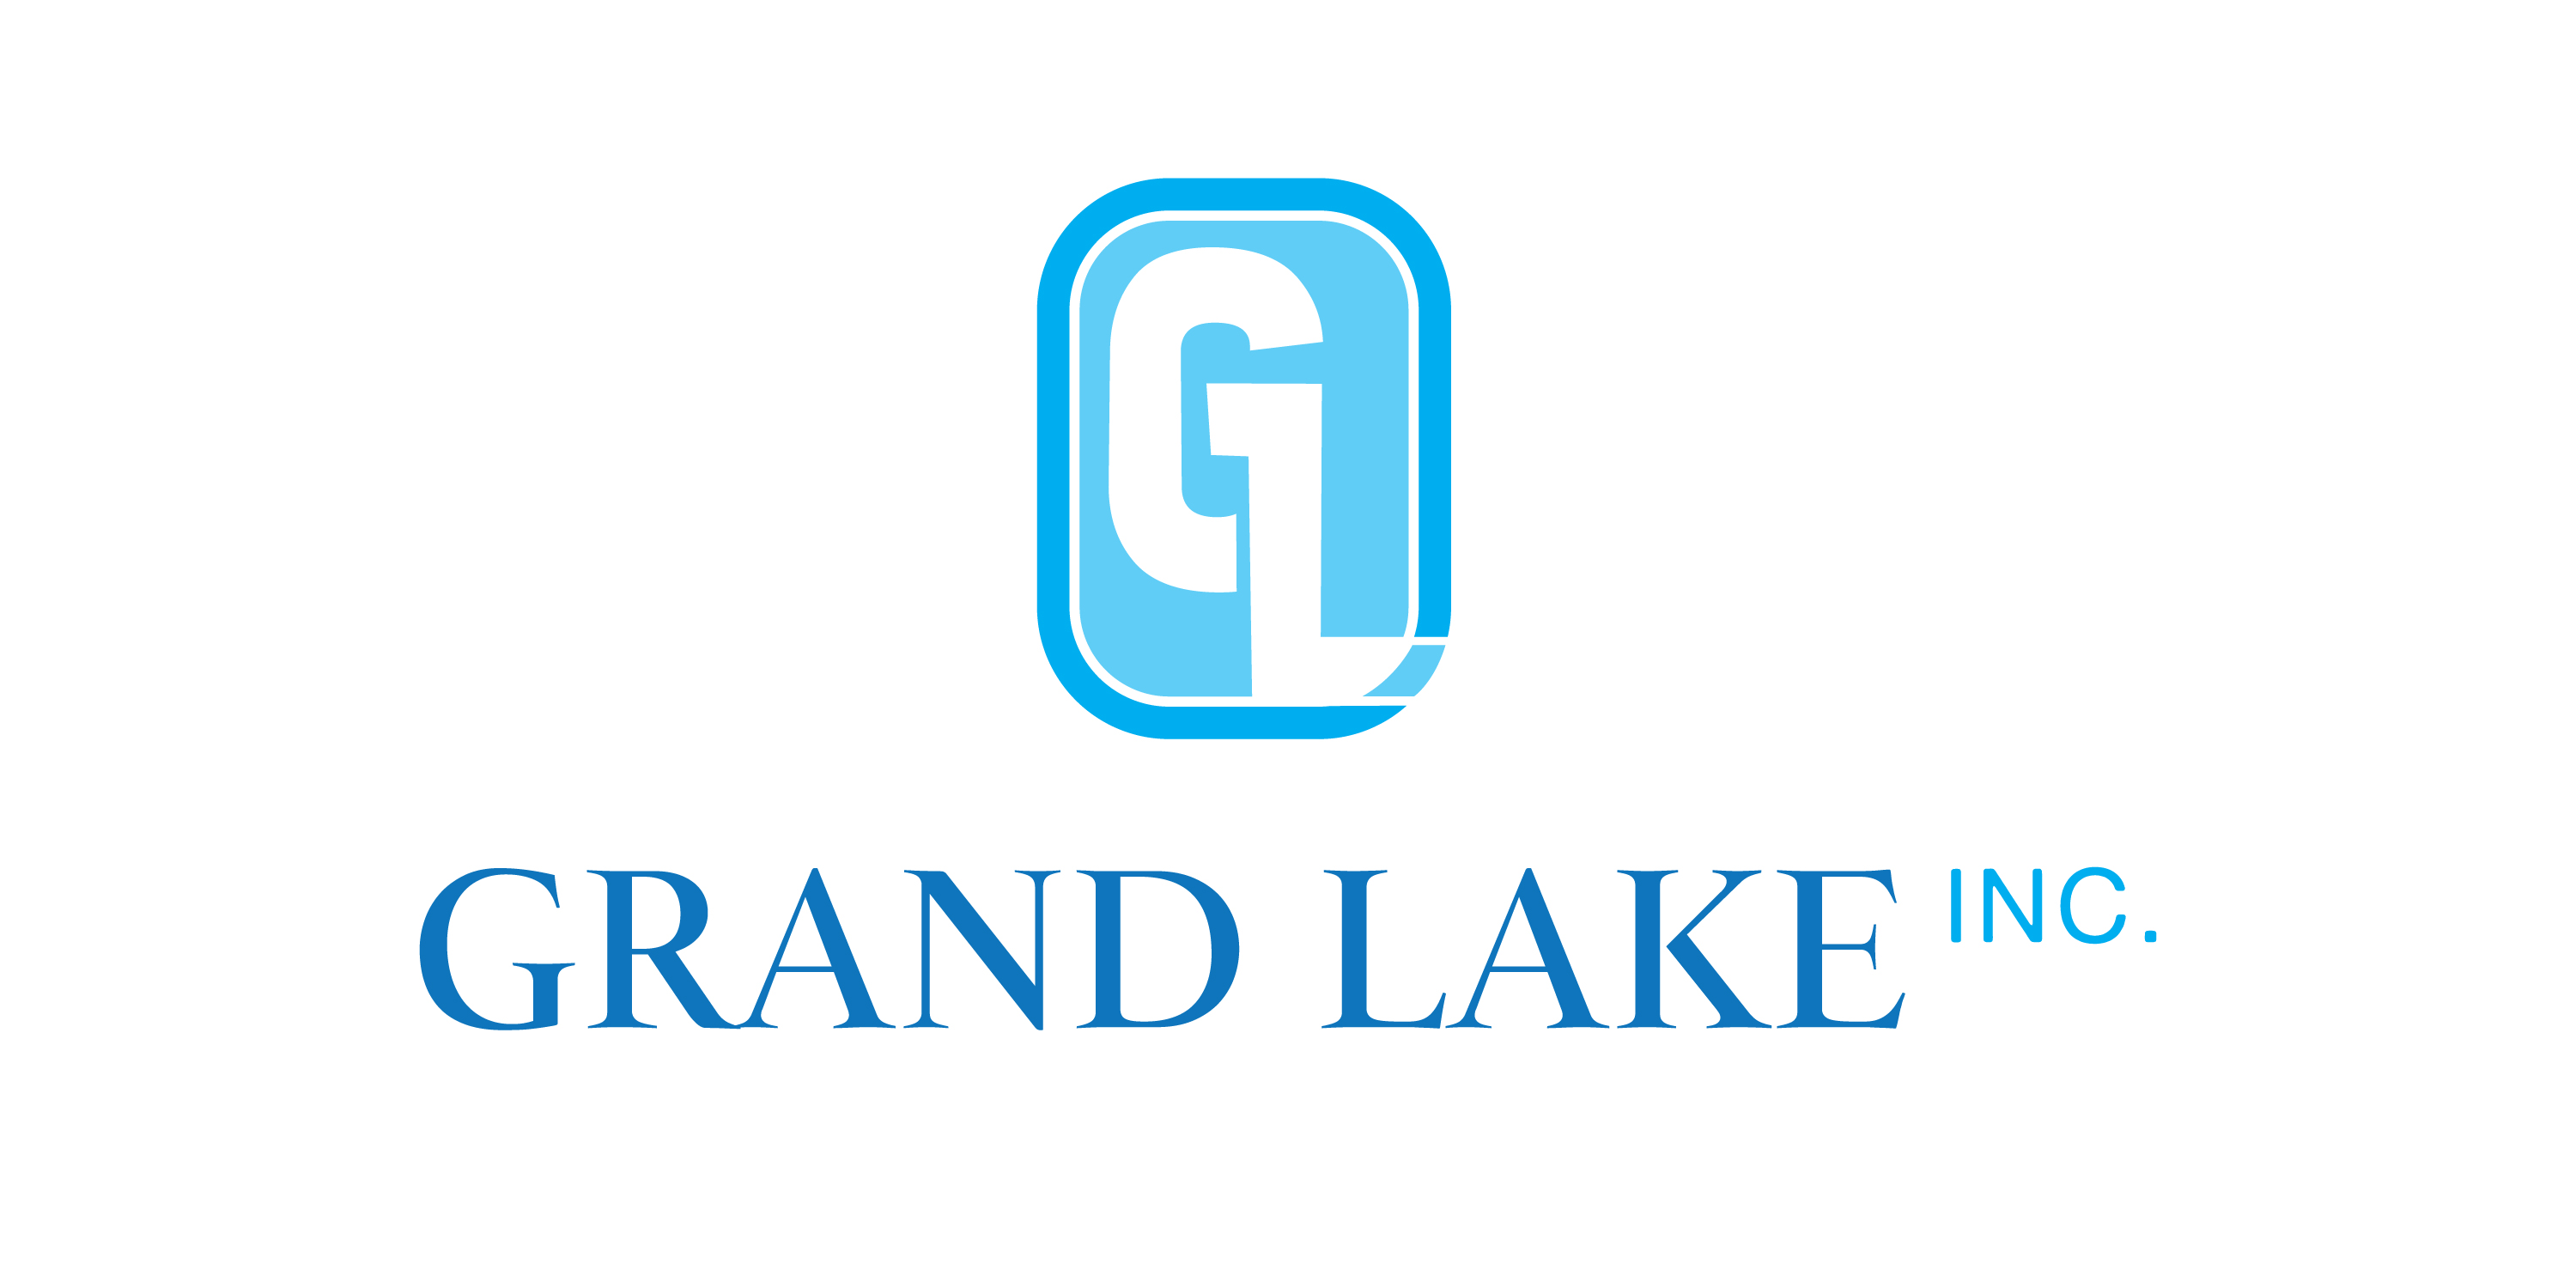 Grand Lake Inc. 美国格兰瑞科公司